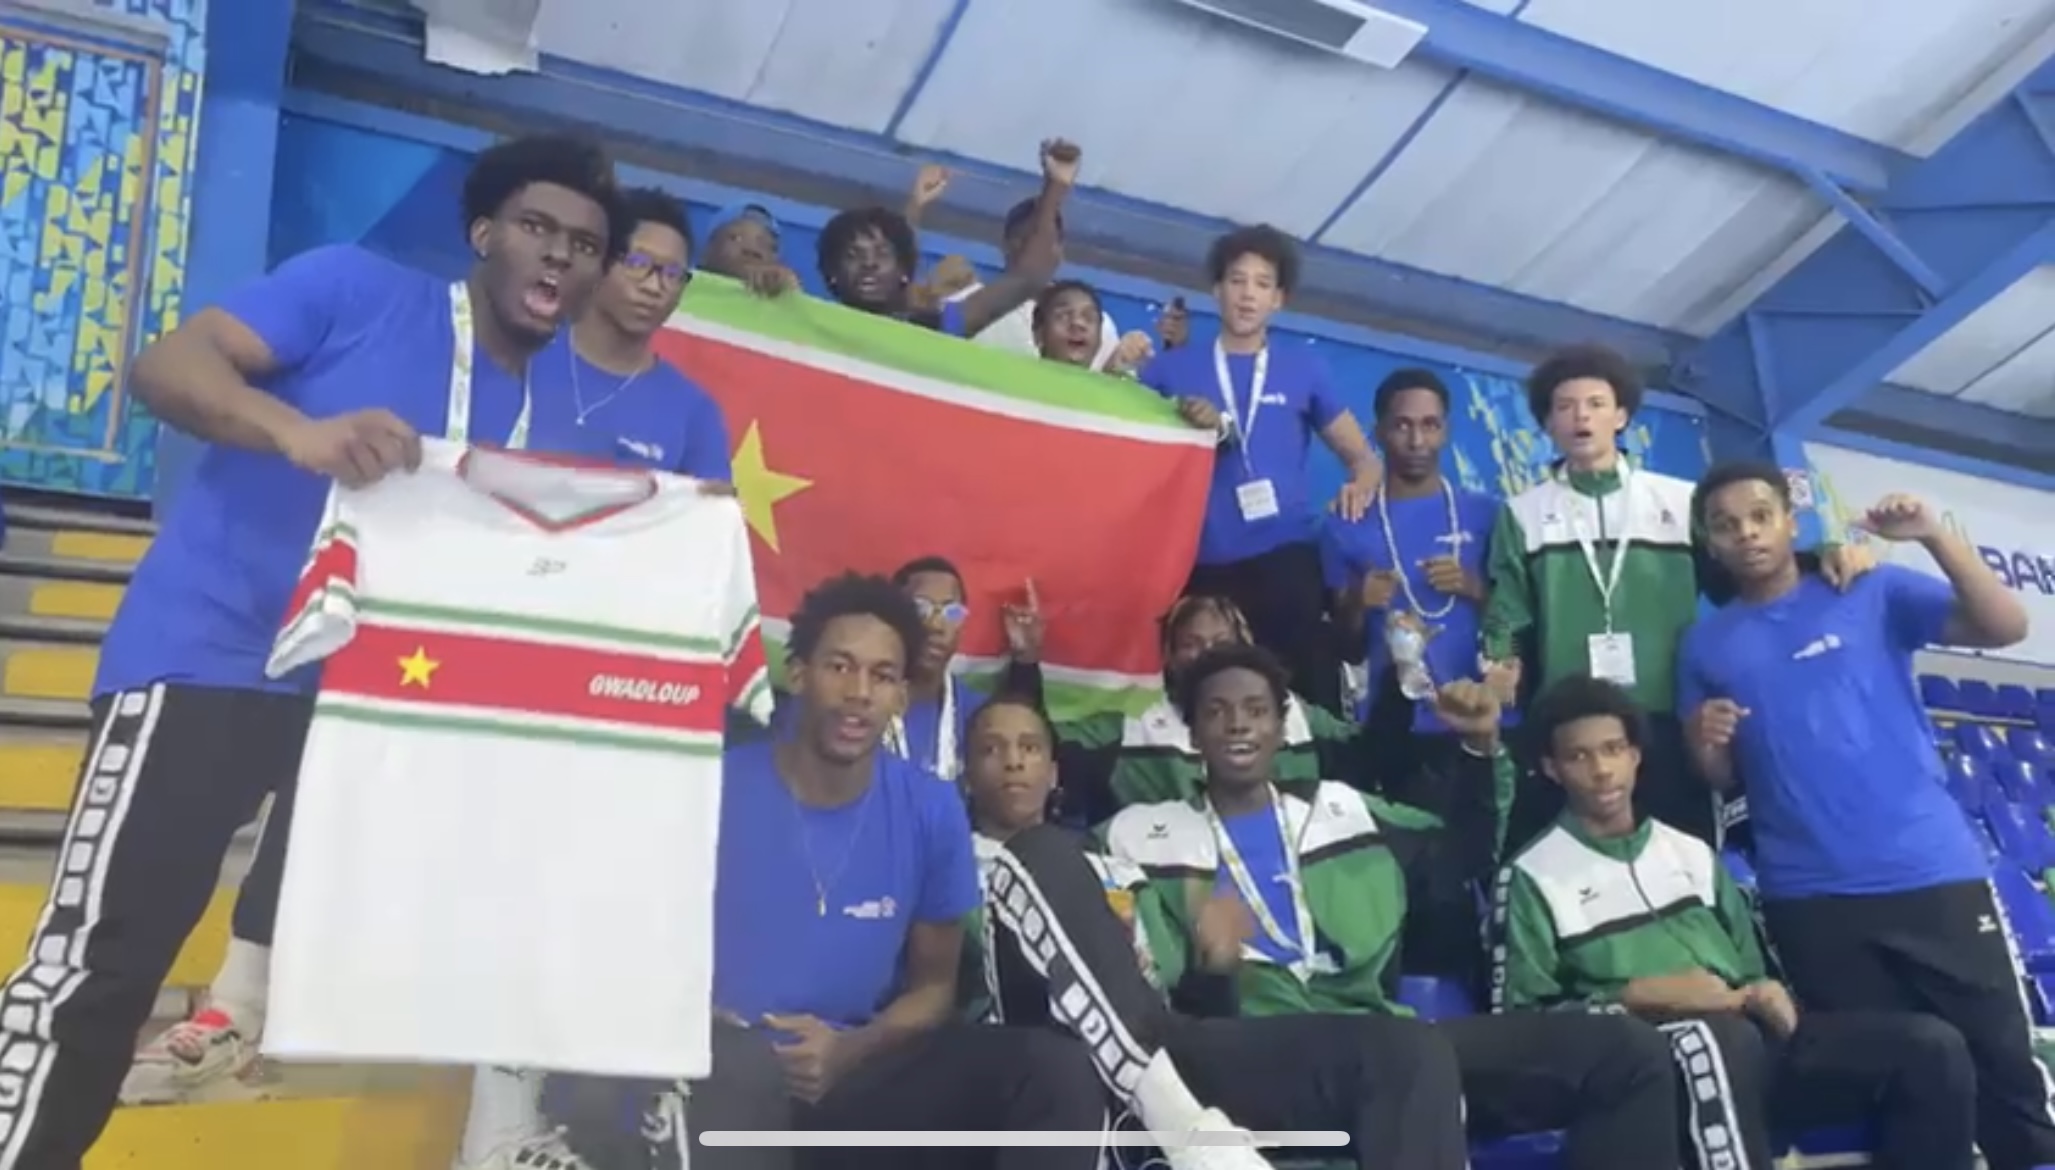     La Guadeloupe remporte le titre de champion intercontinental de Handball au Costa Rica

